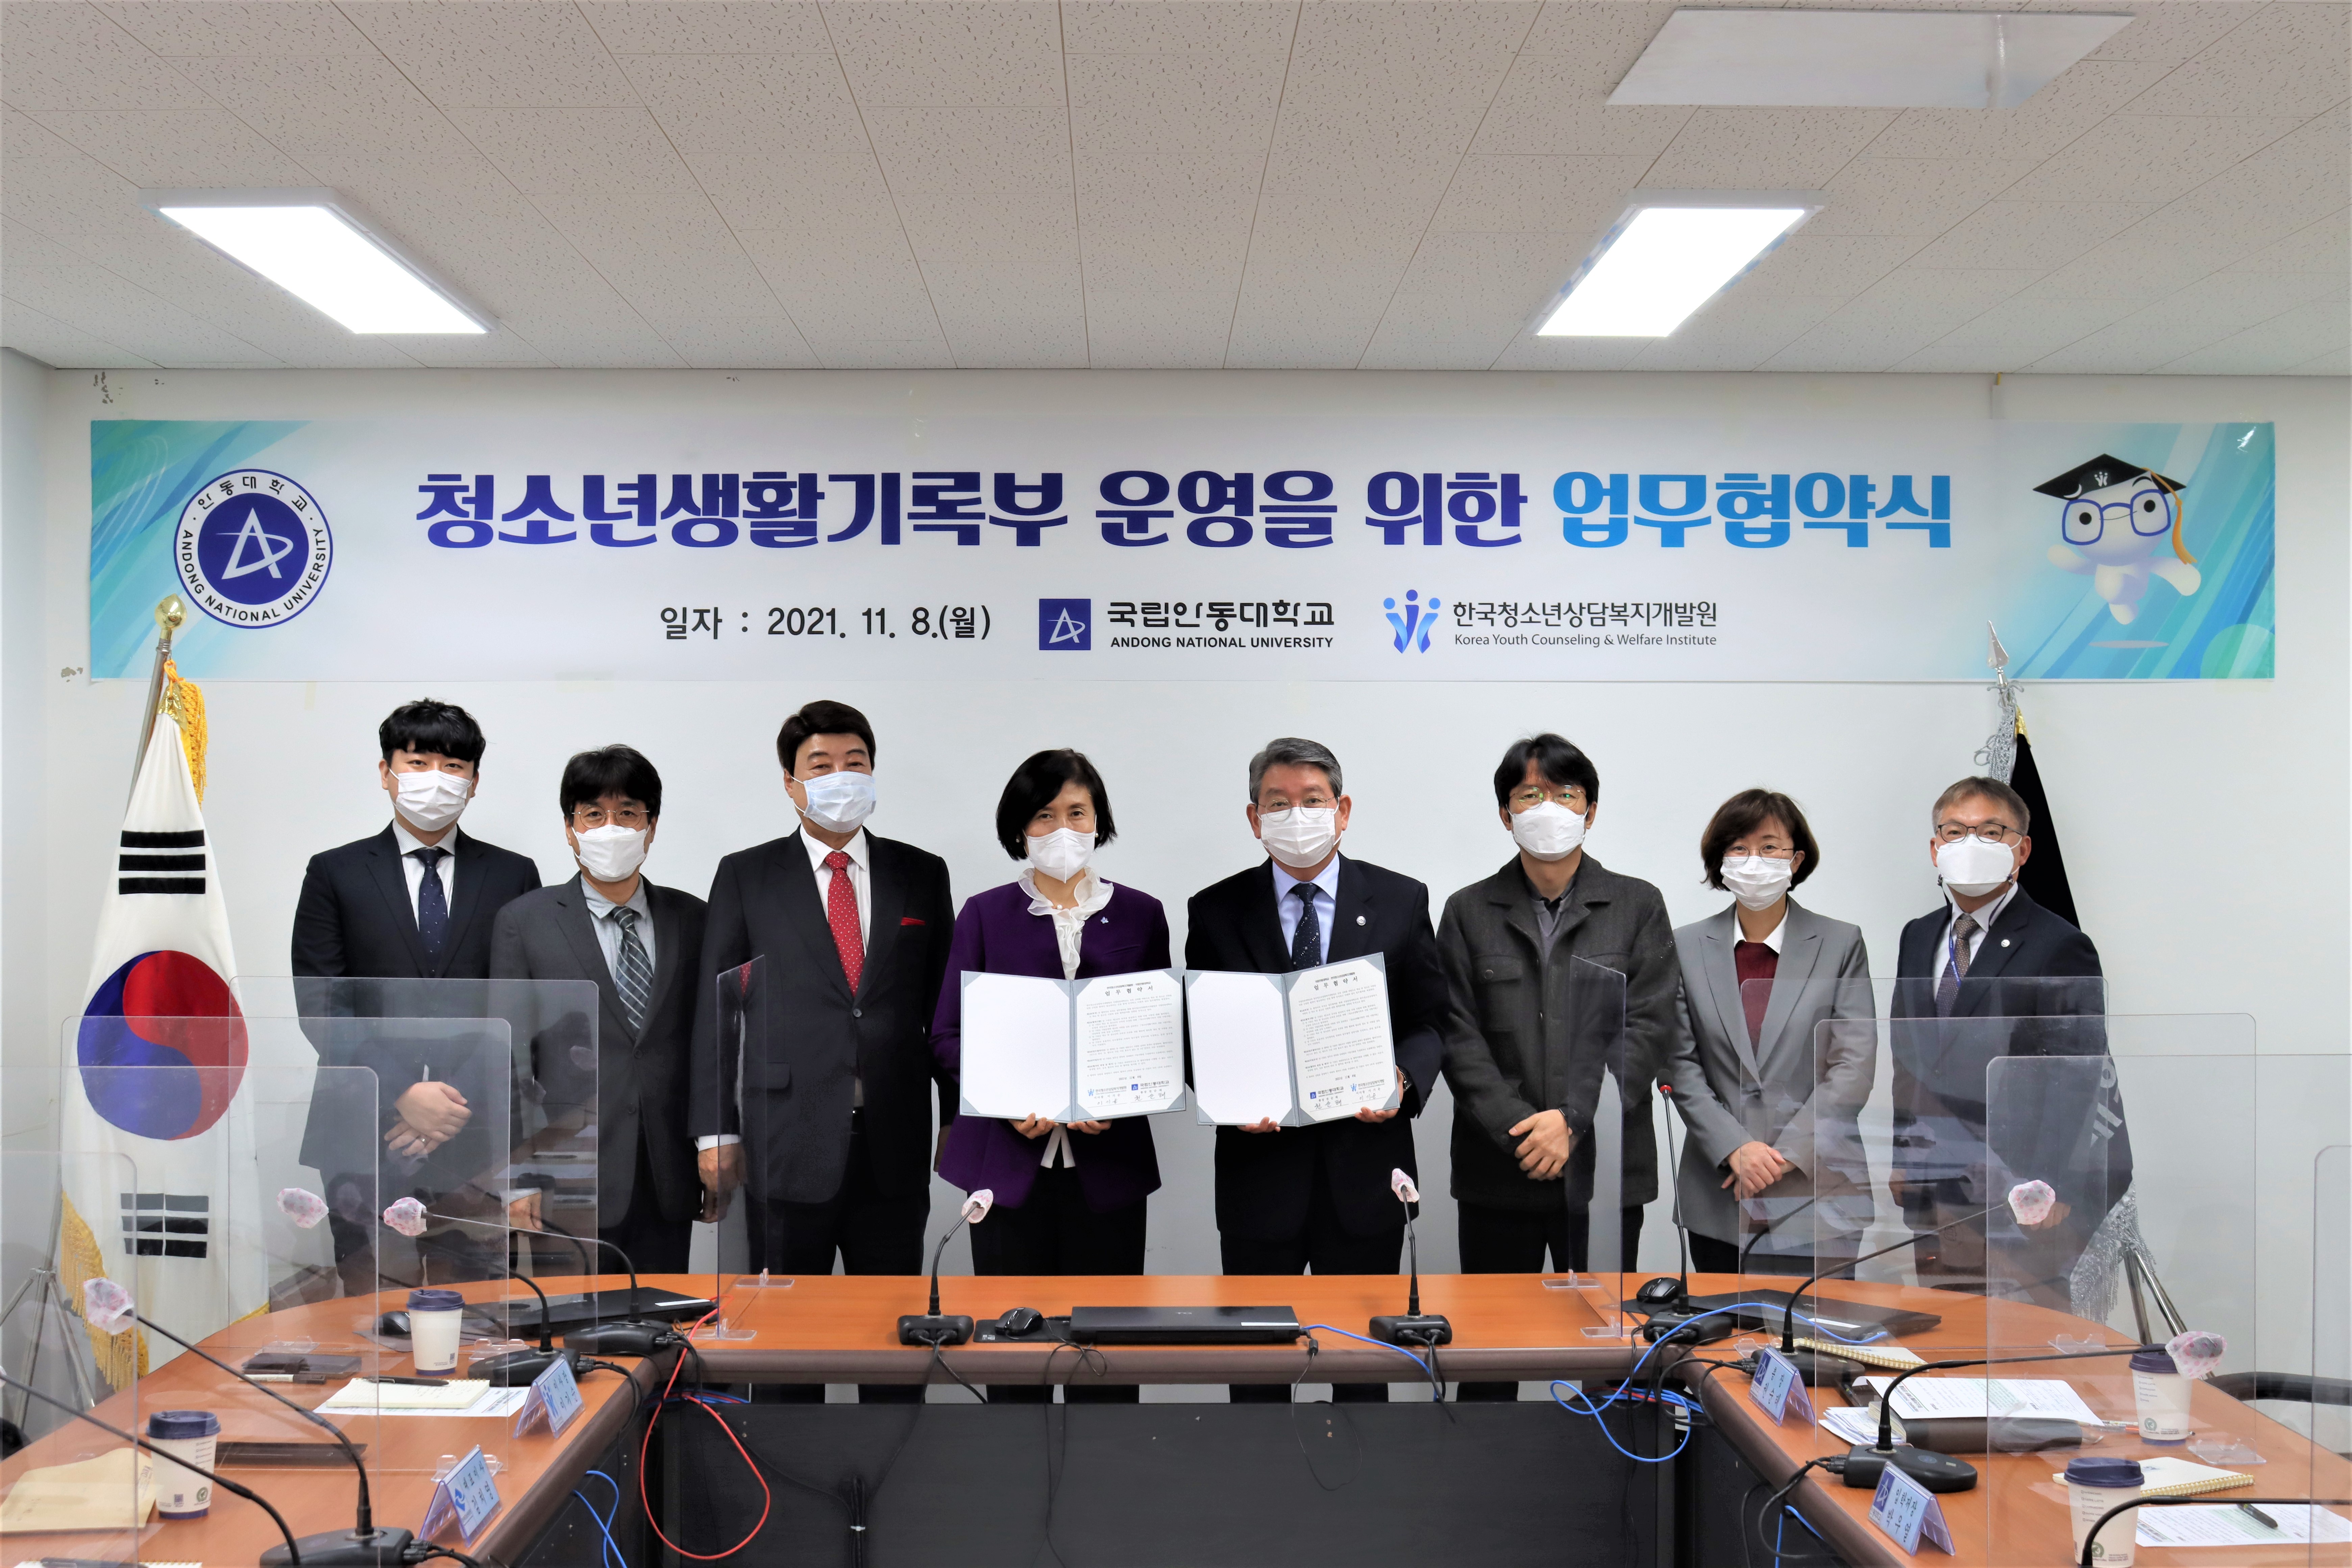 [보도자료]한국청소년상담복지개발원_국립안동대학교 업무협약 사진1 하단내용참조